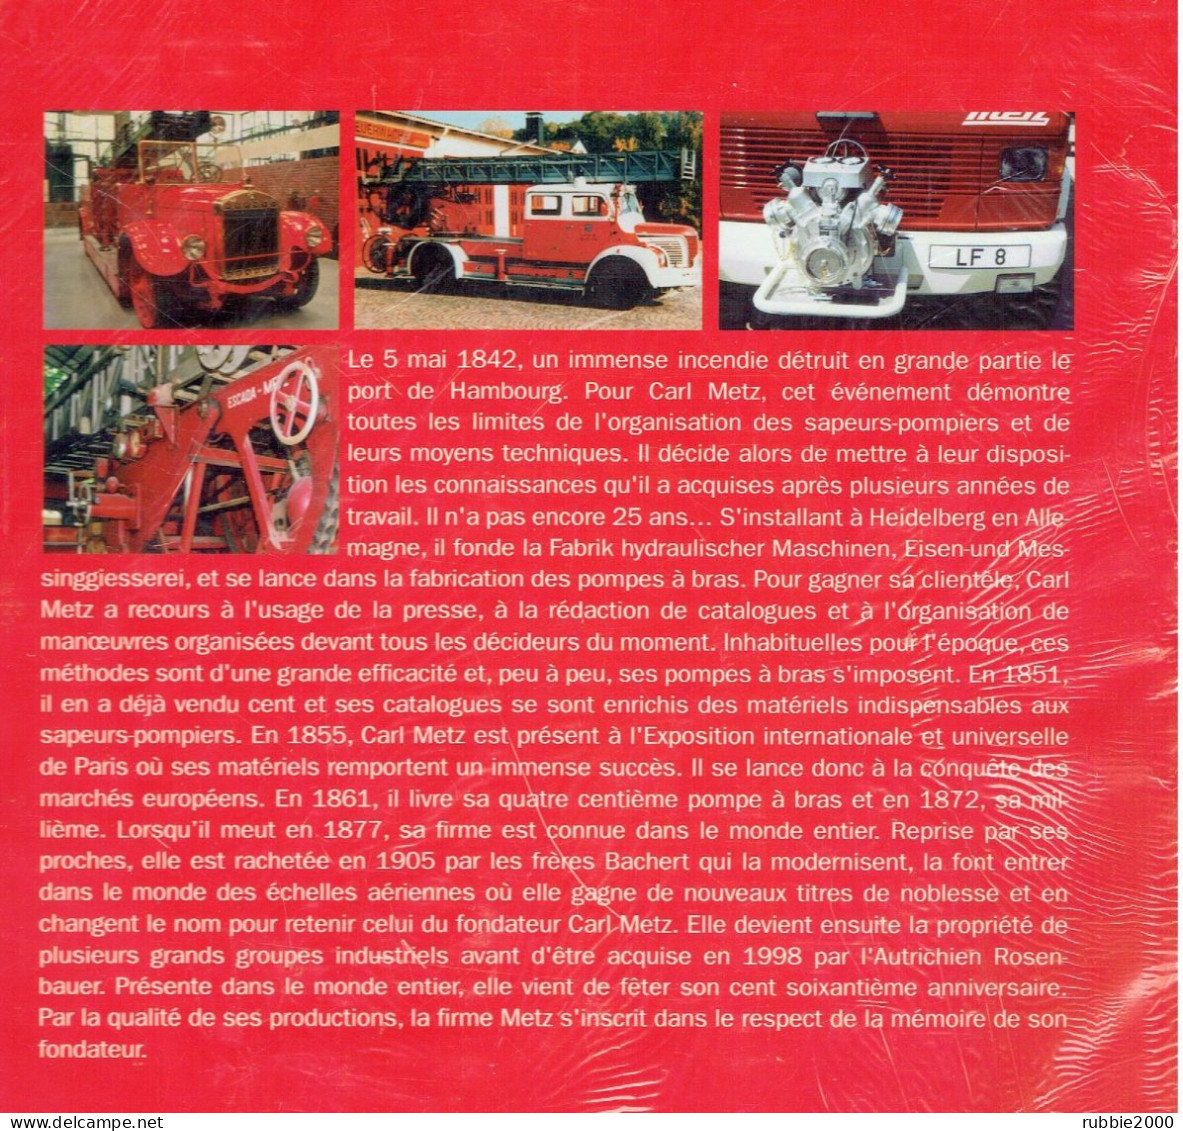 CARL METZ ET LES VEHICULES DE SAPEURS POMPIERS 2002 PAR J.F. SCHMAUCH SAPEUR POMPIER - Brandweer